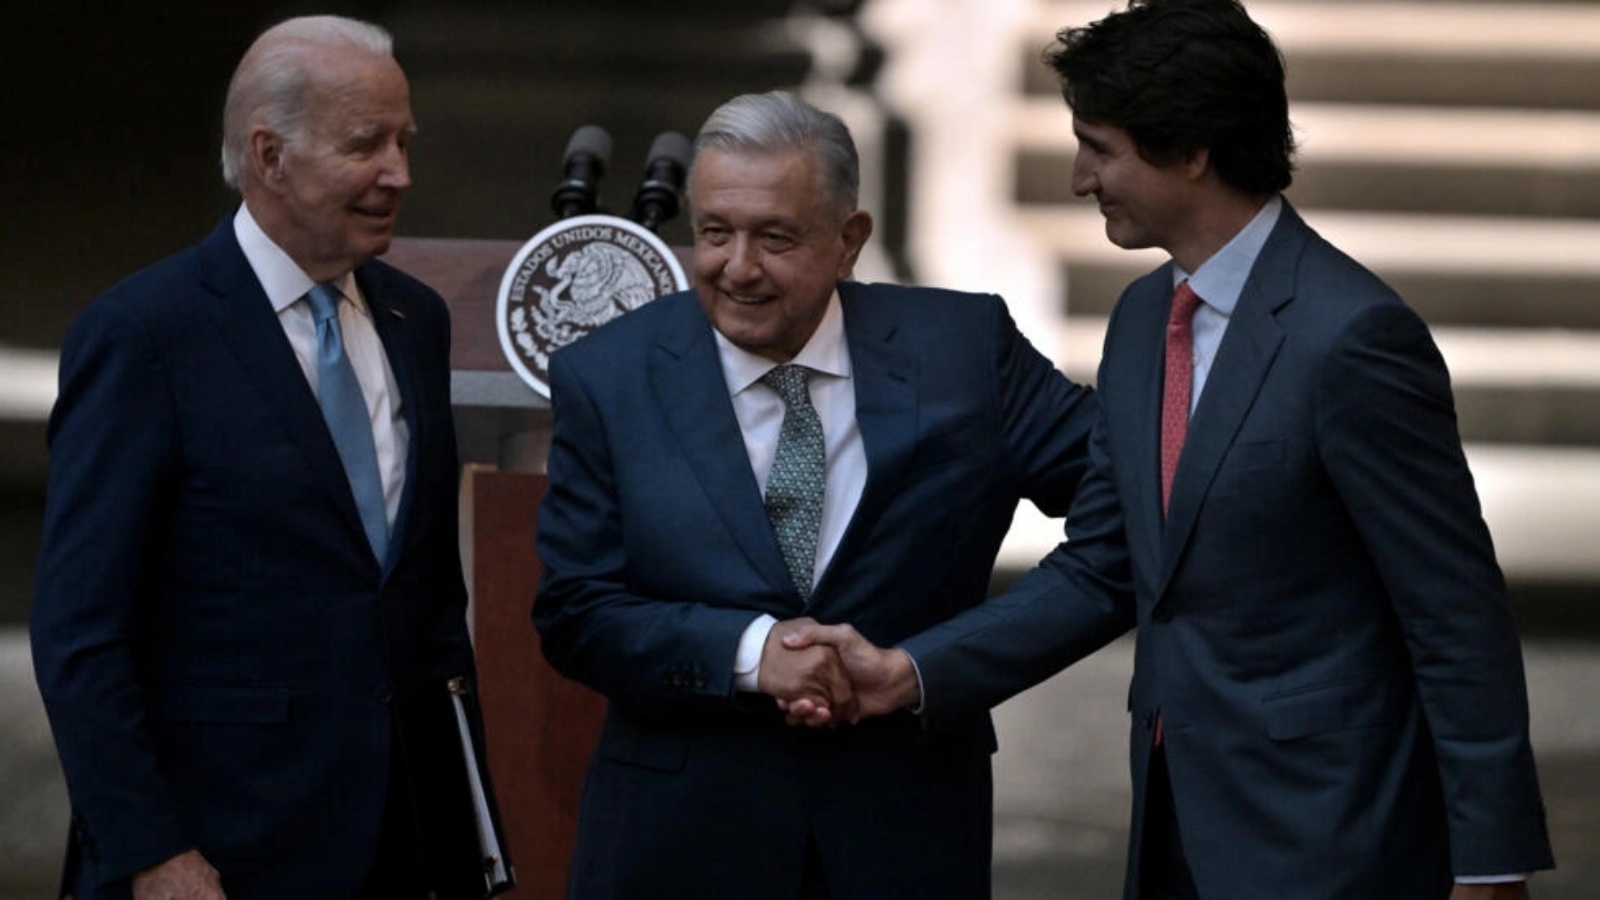 رئيس وزراء كندا جاستن ترودو (يمين) والرئيس المكسيكي أندريس مانويل لوبيز أوبرادور (وسط) يتصافحان أمام الرئيس الأميركي جو بايدن في العاشر من يناير 2023 في مكسيكو على هامش قمة قادة أميركا الشمالية